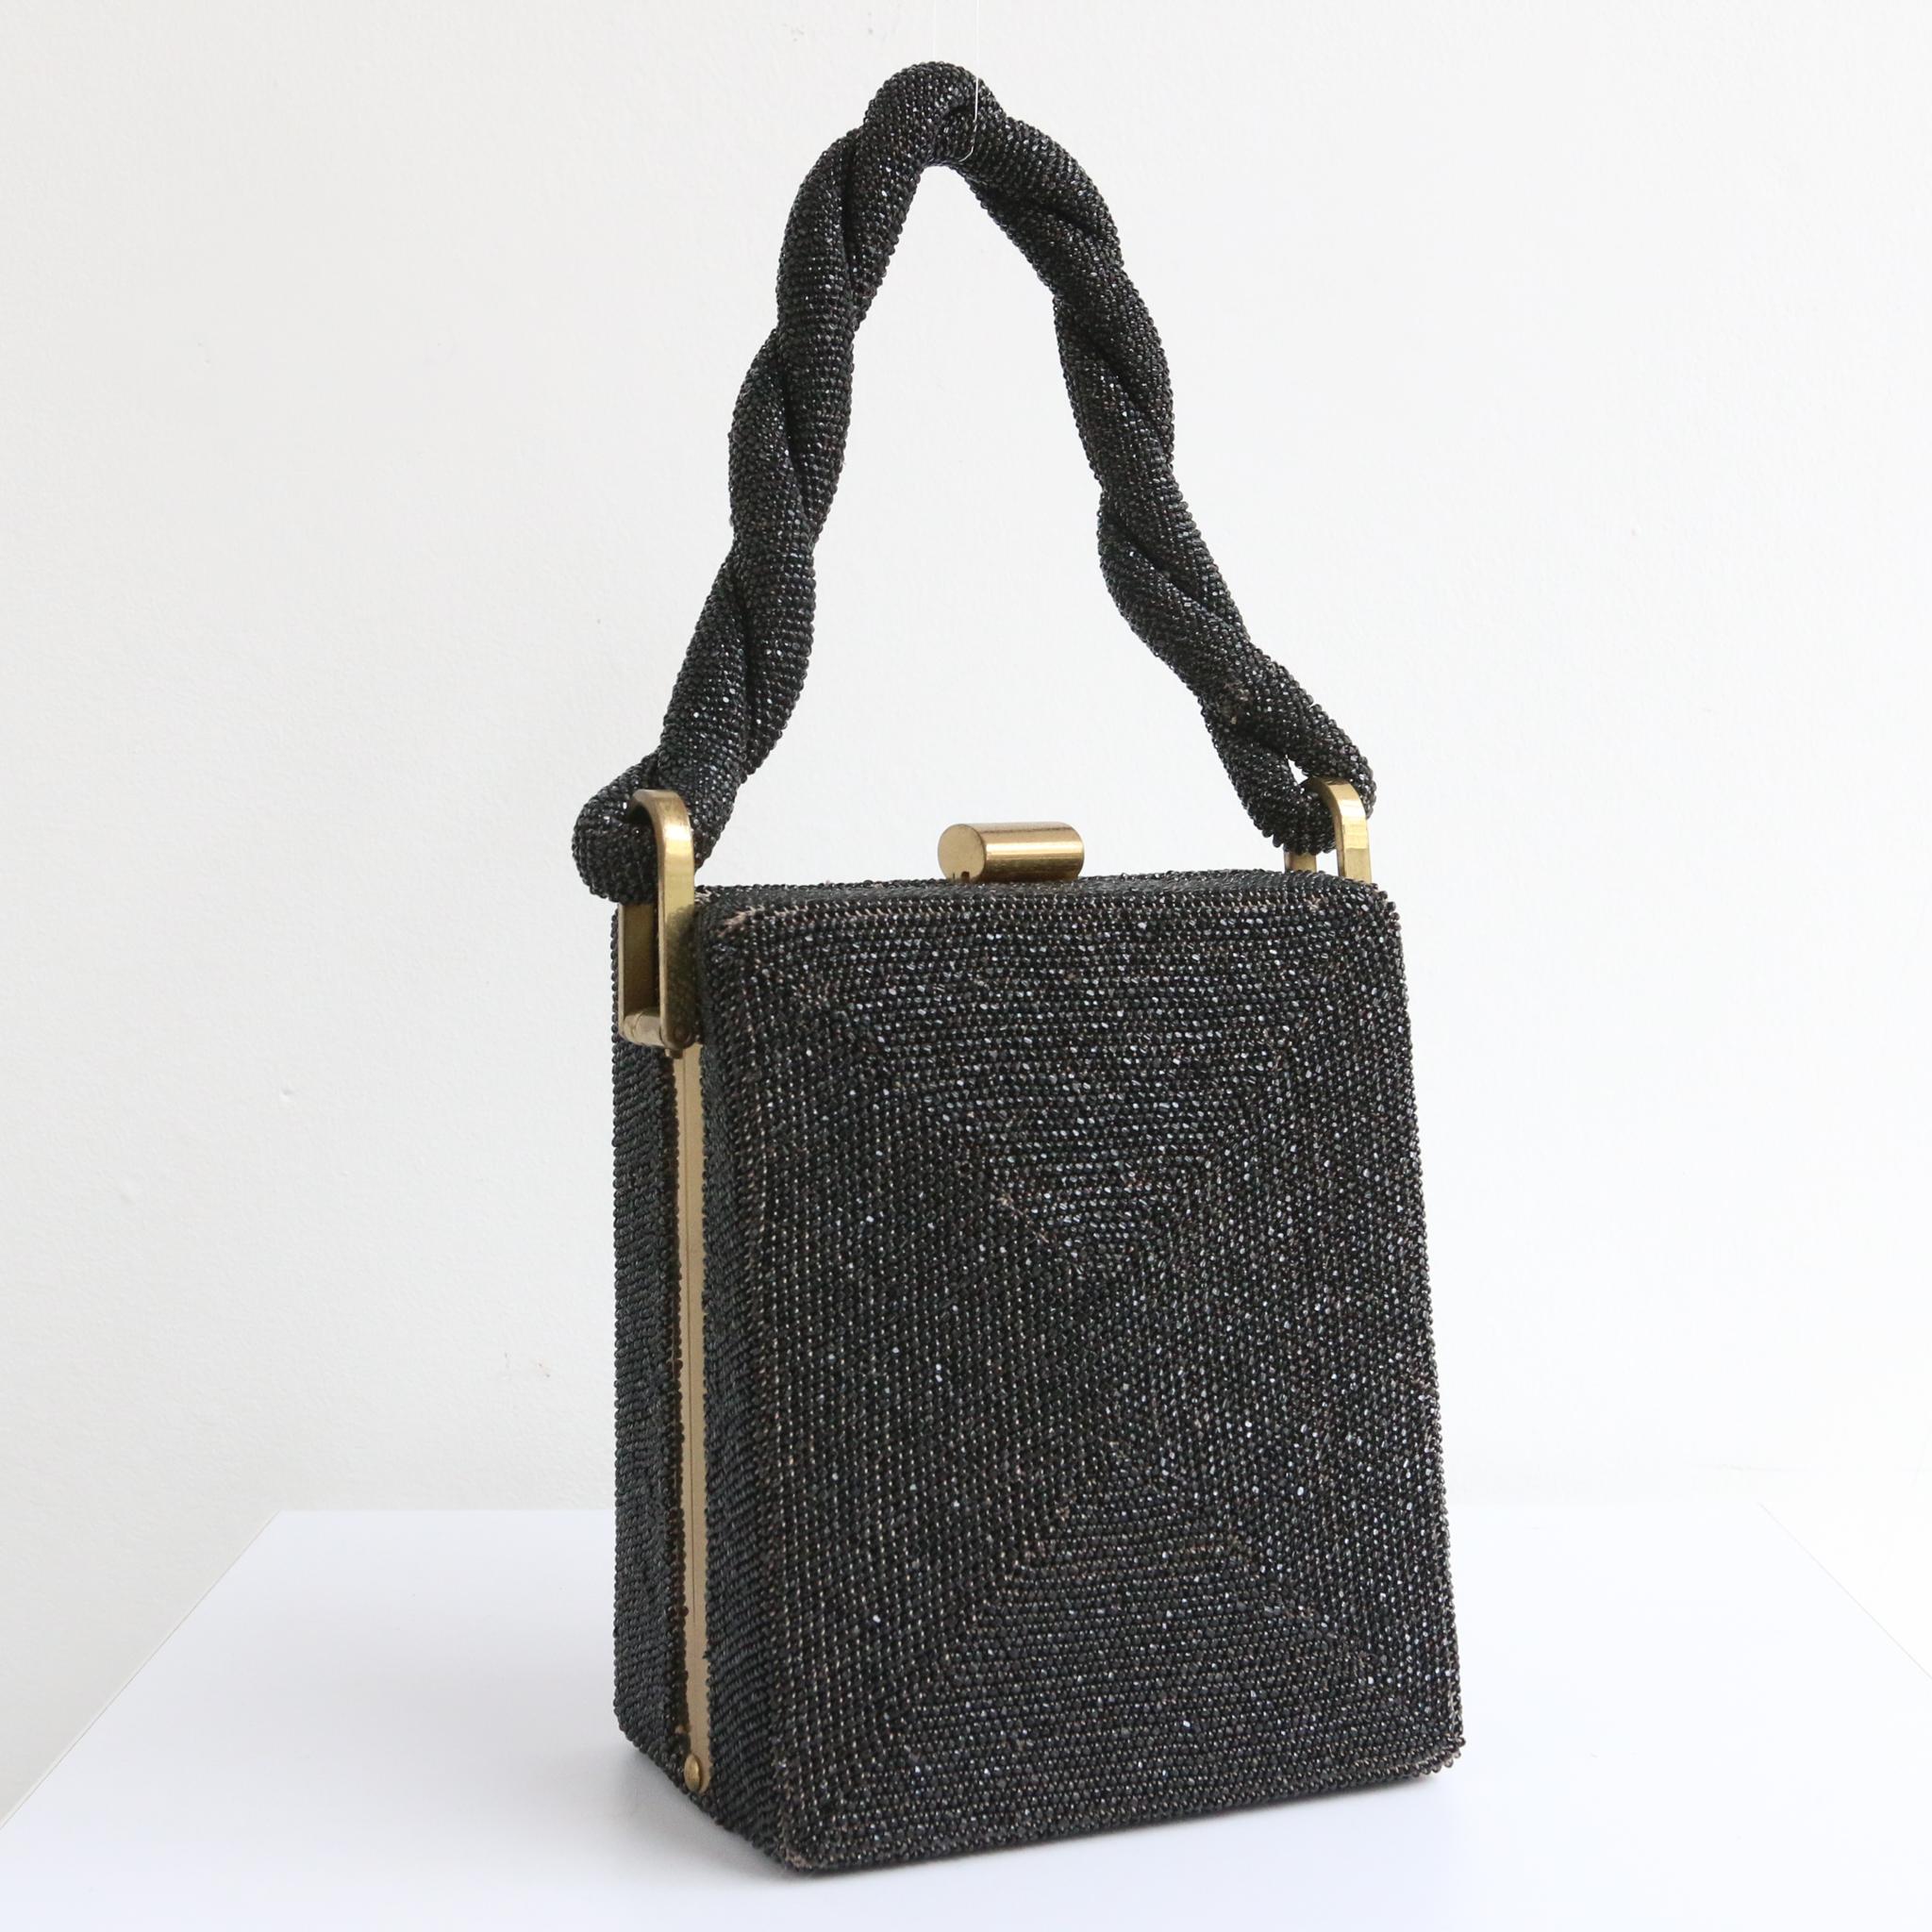 Diese atemberaubende, rechteckige Box Bag aus den 1940er Jahren mit Messing-Metallelementen ist die perfekte Ergänzung zu Ihrem Ensemble. 
Die rechteckige Form des Beutels besteht aus schwarzen, facettierten Glasperlen, die von einem Metallrahmen